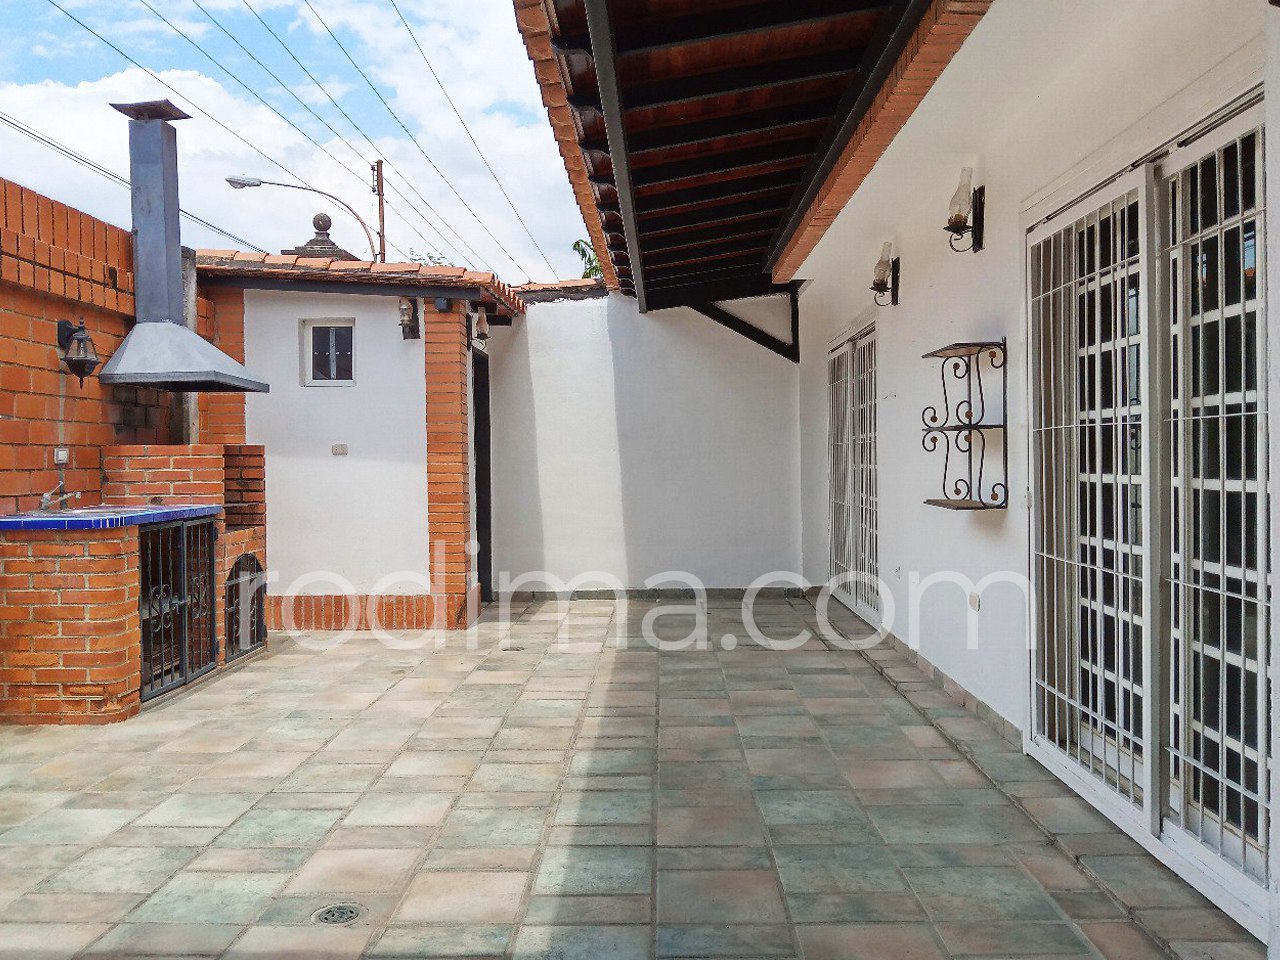 Townhouse en Araguama Country, exclusiva urbanización privada